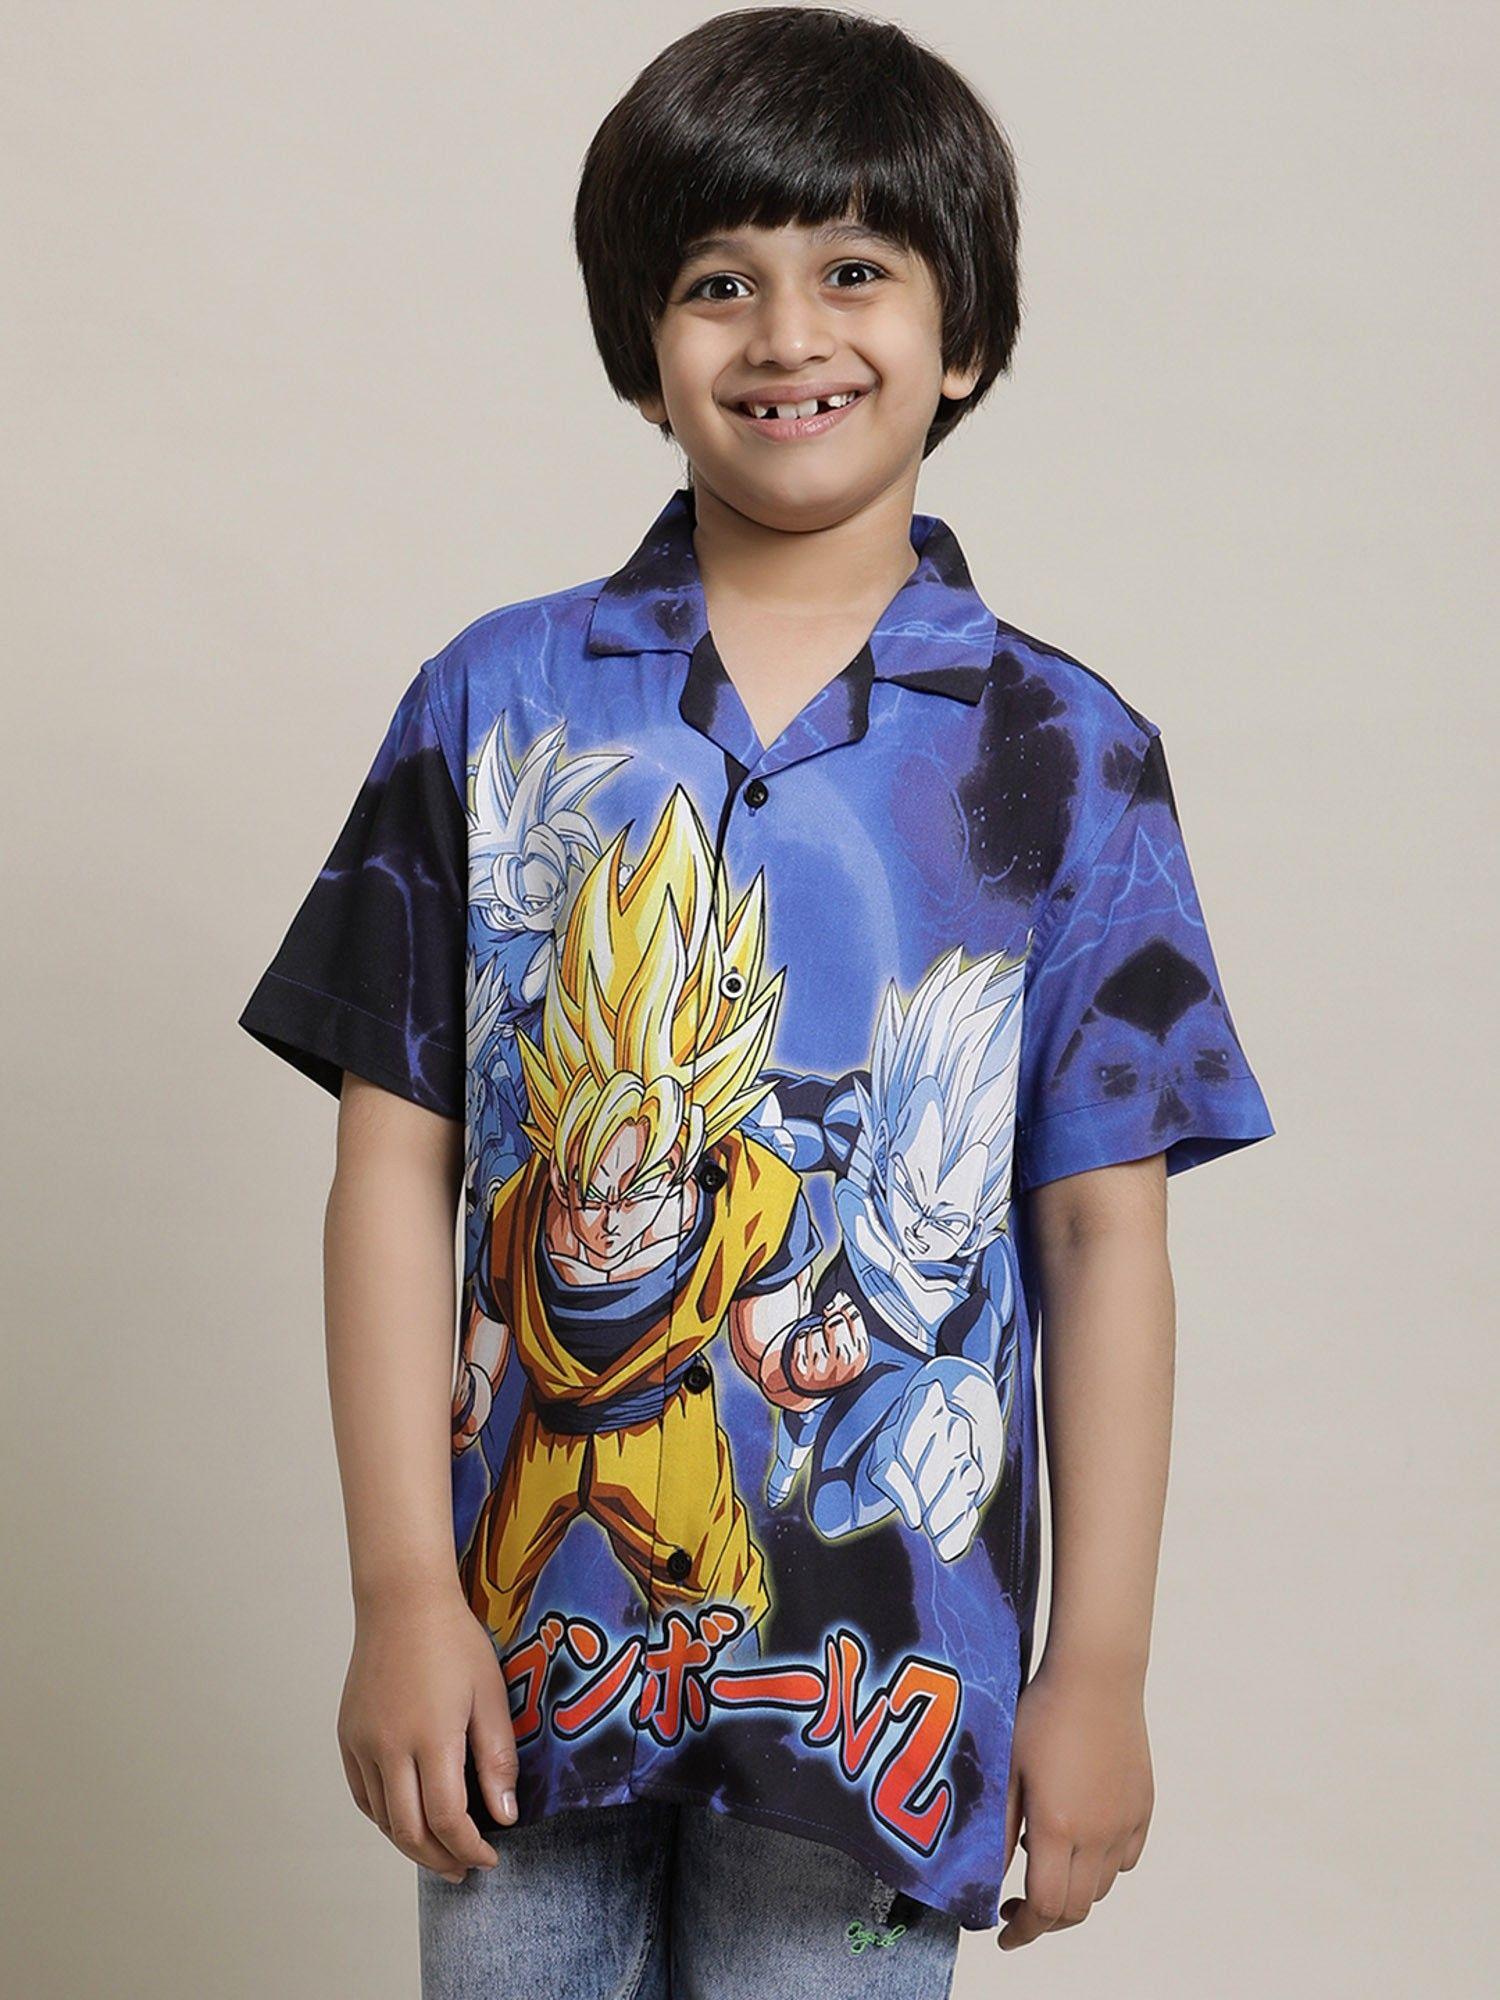 dragon ball z printed multi-color shirt for boys